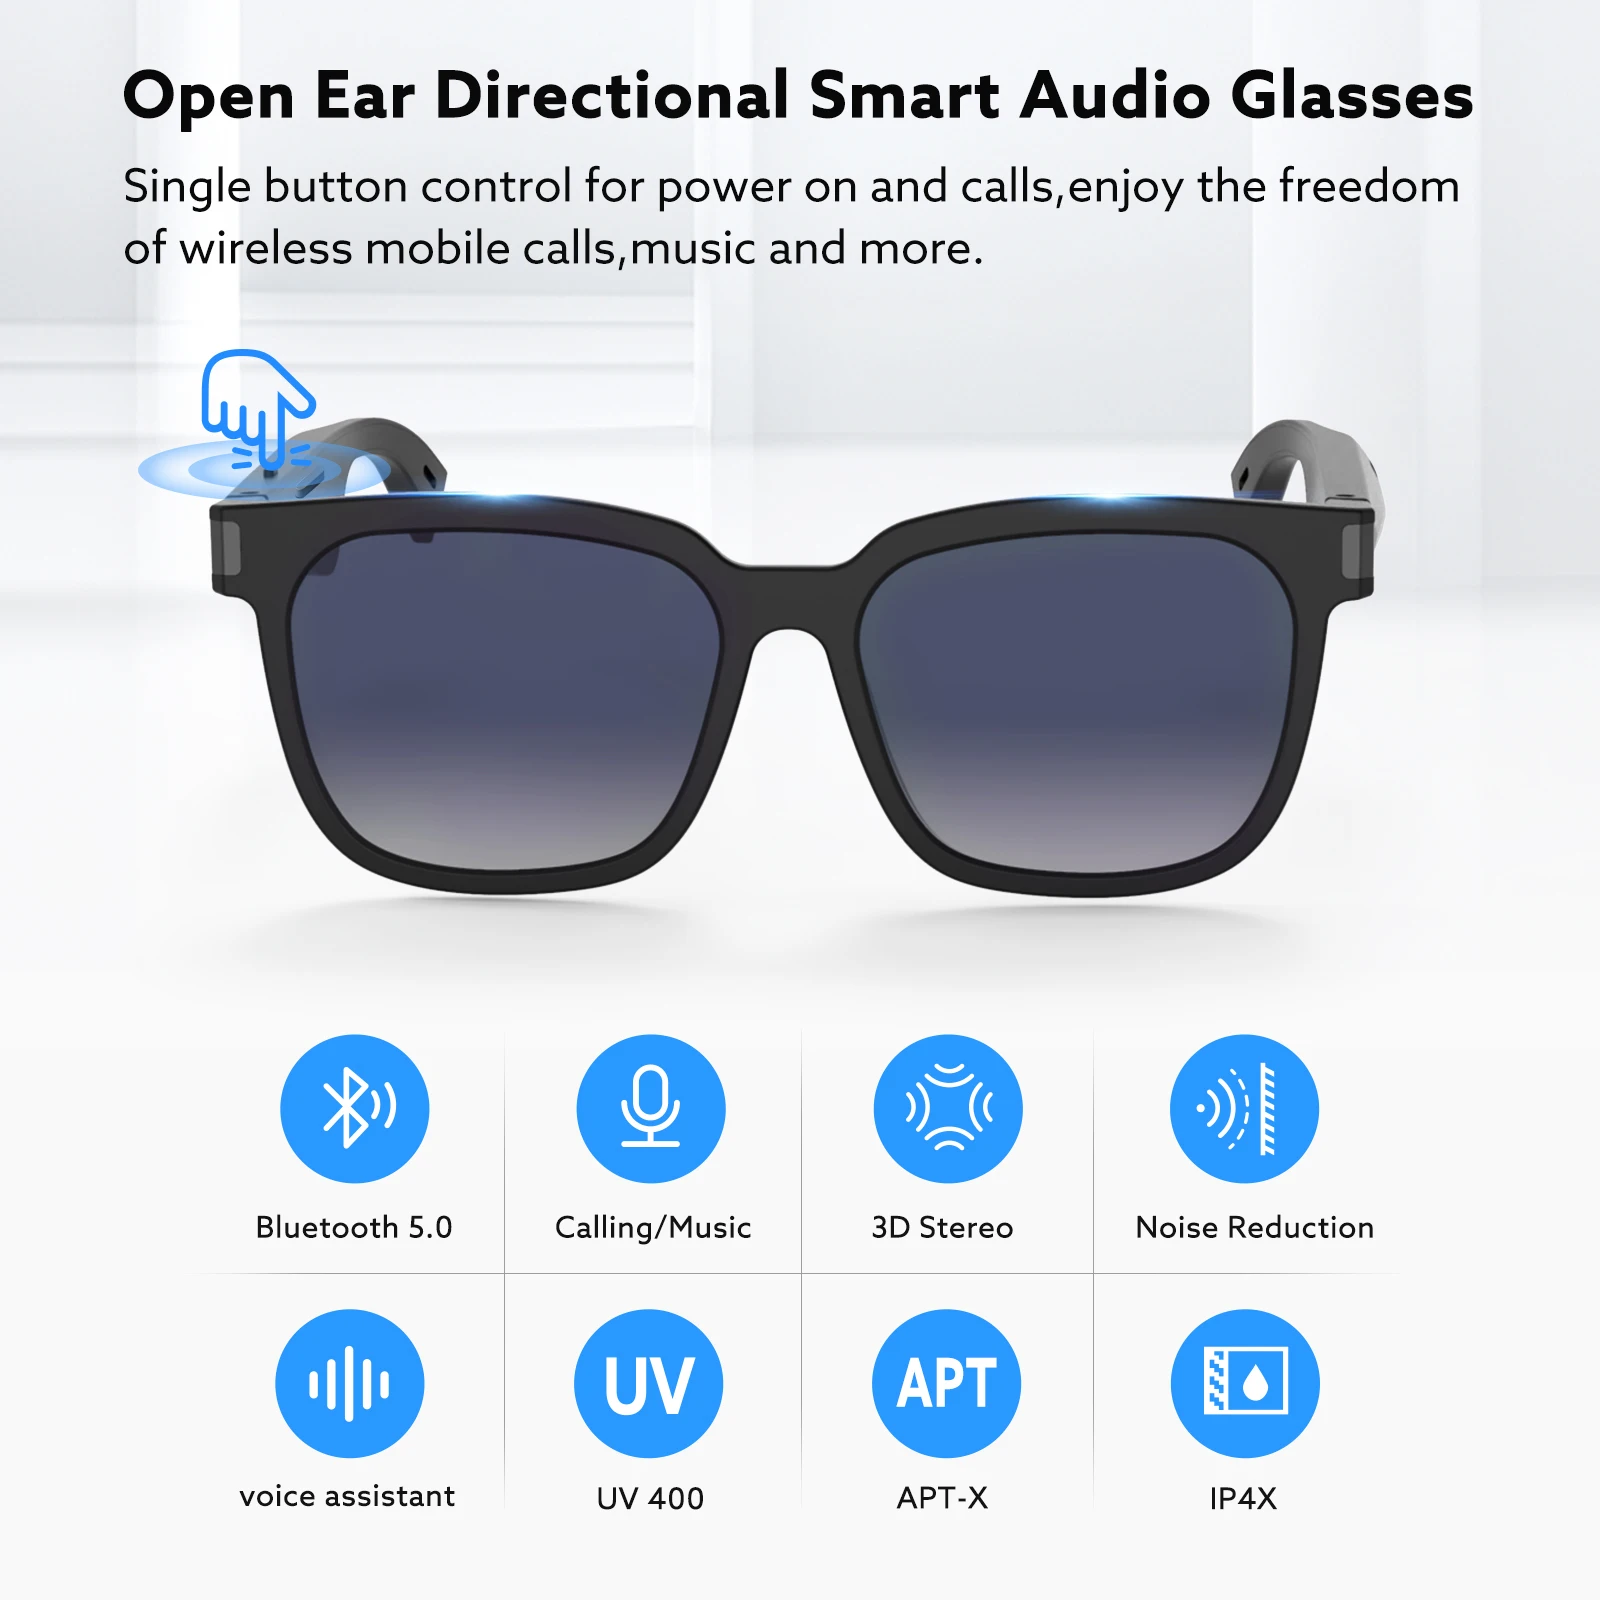 저렴한 무선 오디오 안경 블루투스 스포츠 선글라스 오픈 귀 음악 헤드폰 BT5.0 핸즈프리 통화 편광 안경 렌즈